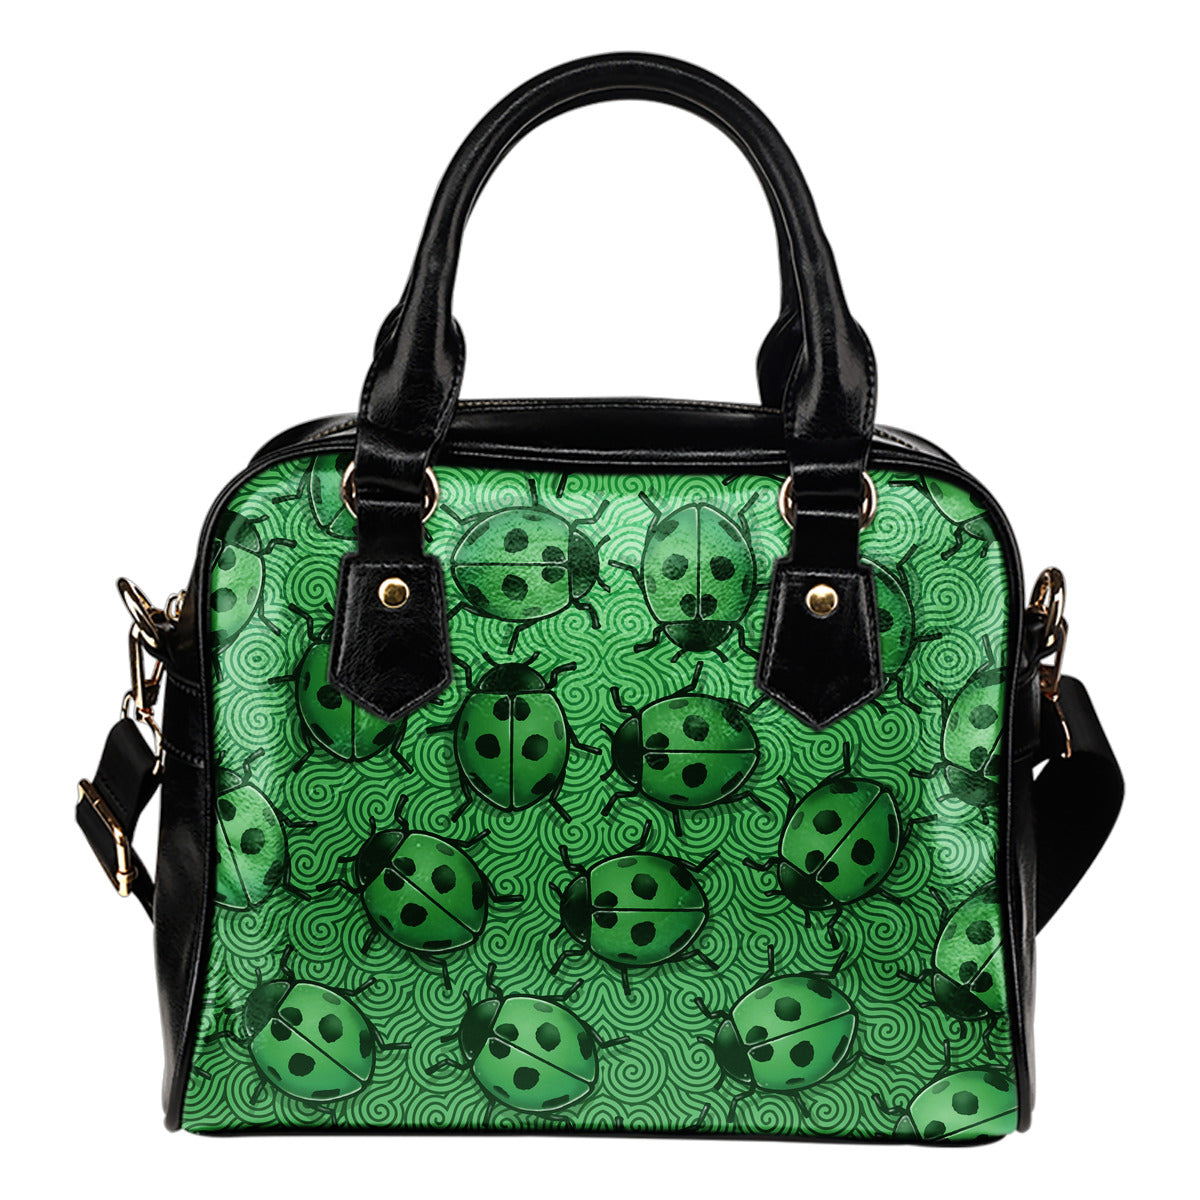 Lady Bug Swirl Shoulder Handbag - Green w/Black Trim